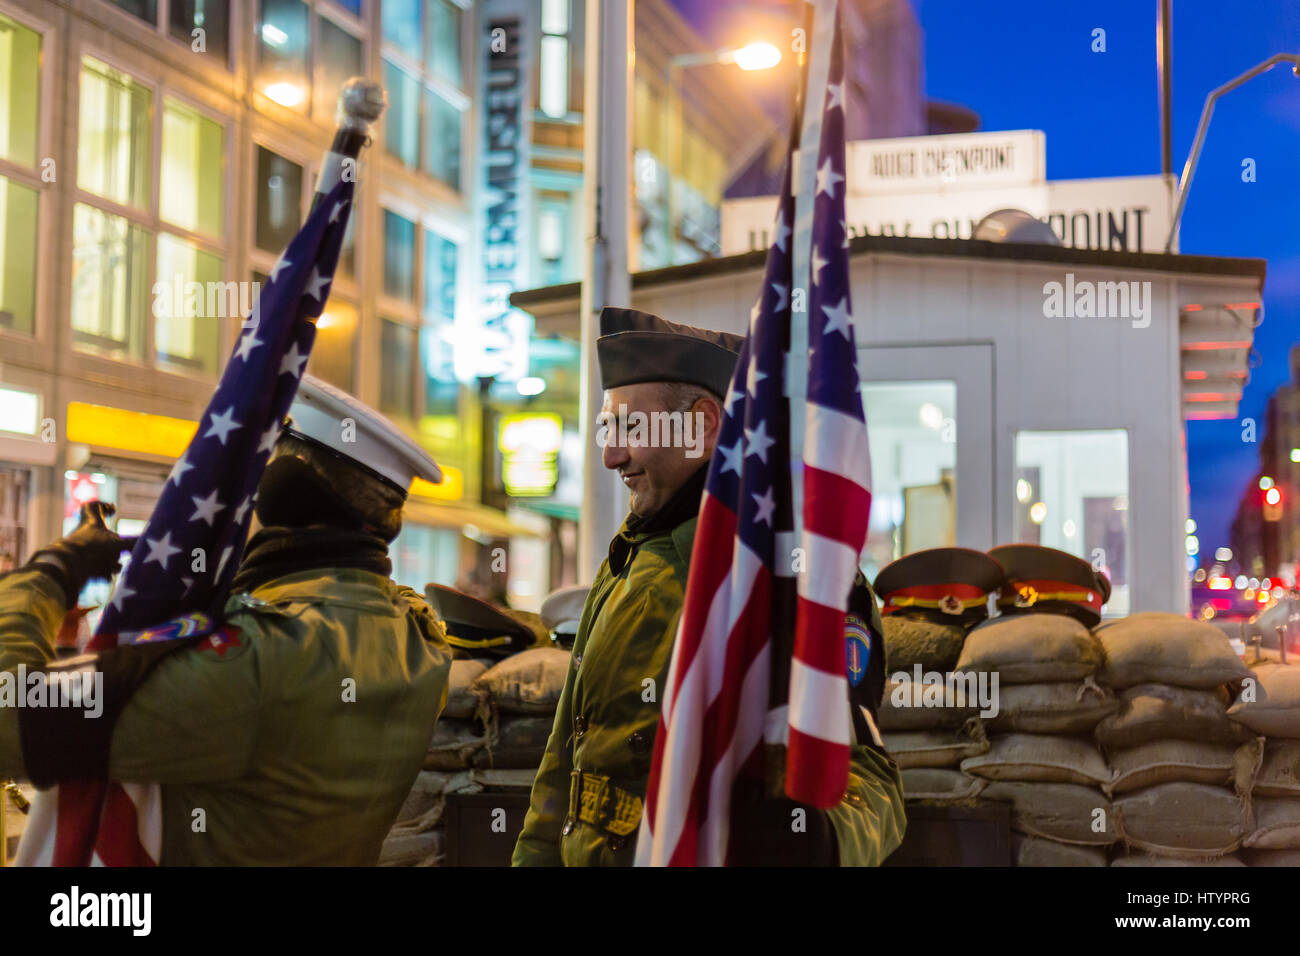 Checkpoint Charlie, Berlin, Deutschland Stockfoto